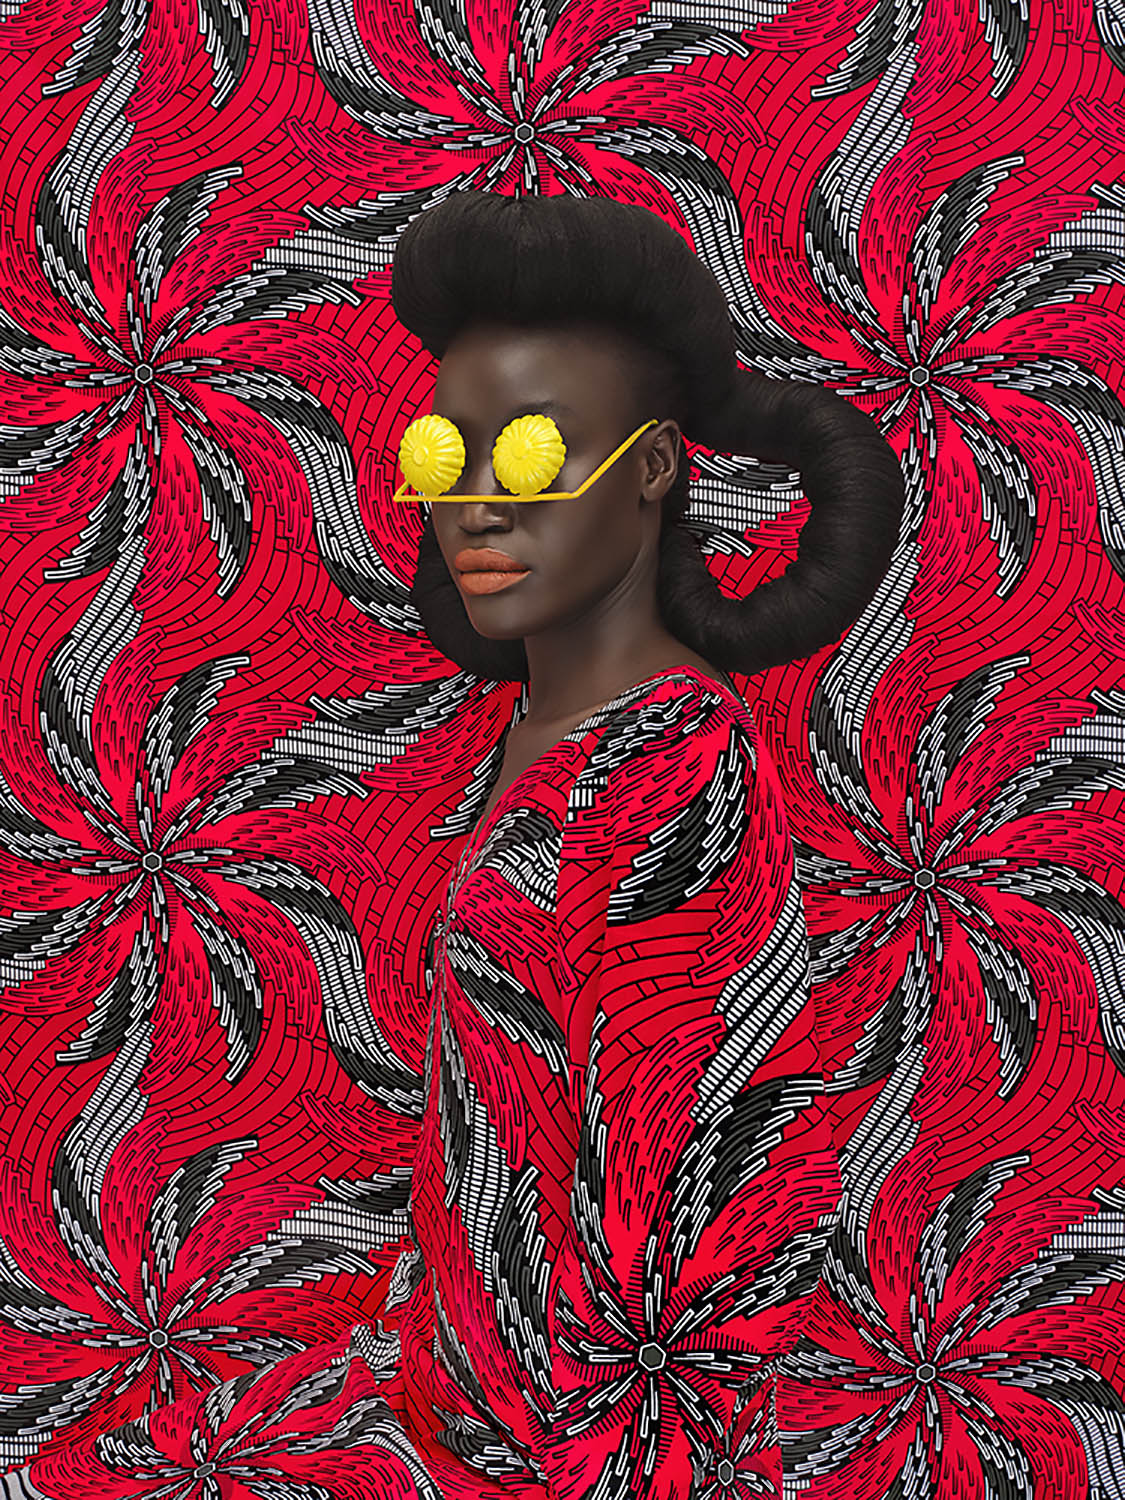 ritratto di donna africana con tessuto ankara a spirali rosse e nere